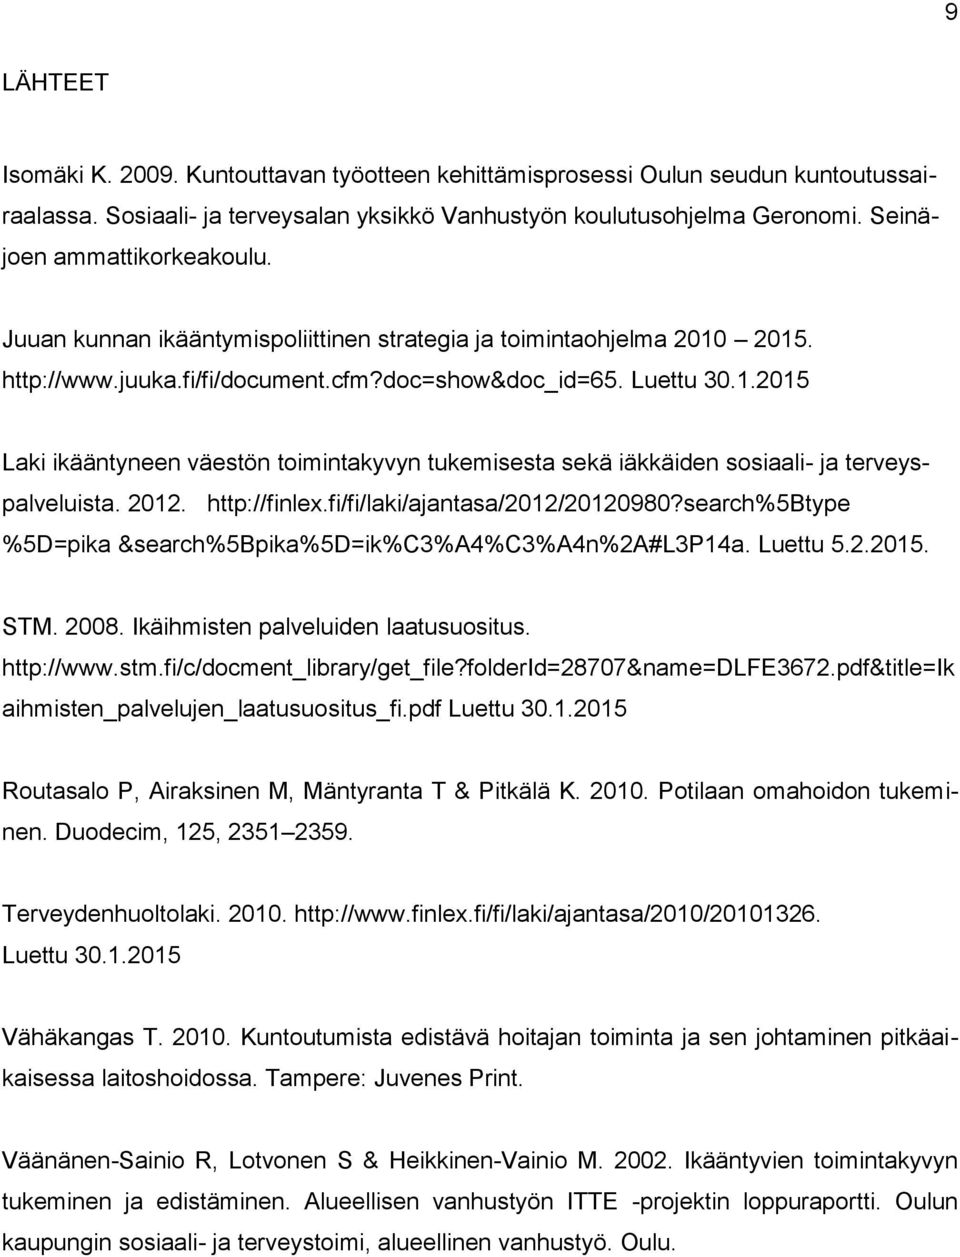 2015. http://www.juuka.fi/fi/document.cfm?doc=show&doc_id=65. Luettu 30.1.2015 Laki ikääntyneen väestön toimintakyvyn tukemisesta sekä iäkkäiden sosiaali- ja terveyspalveluista. 2012. http://finlex.